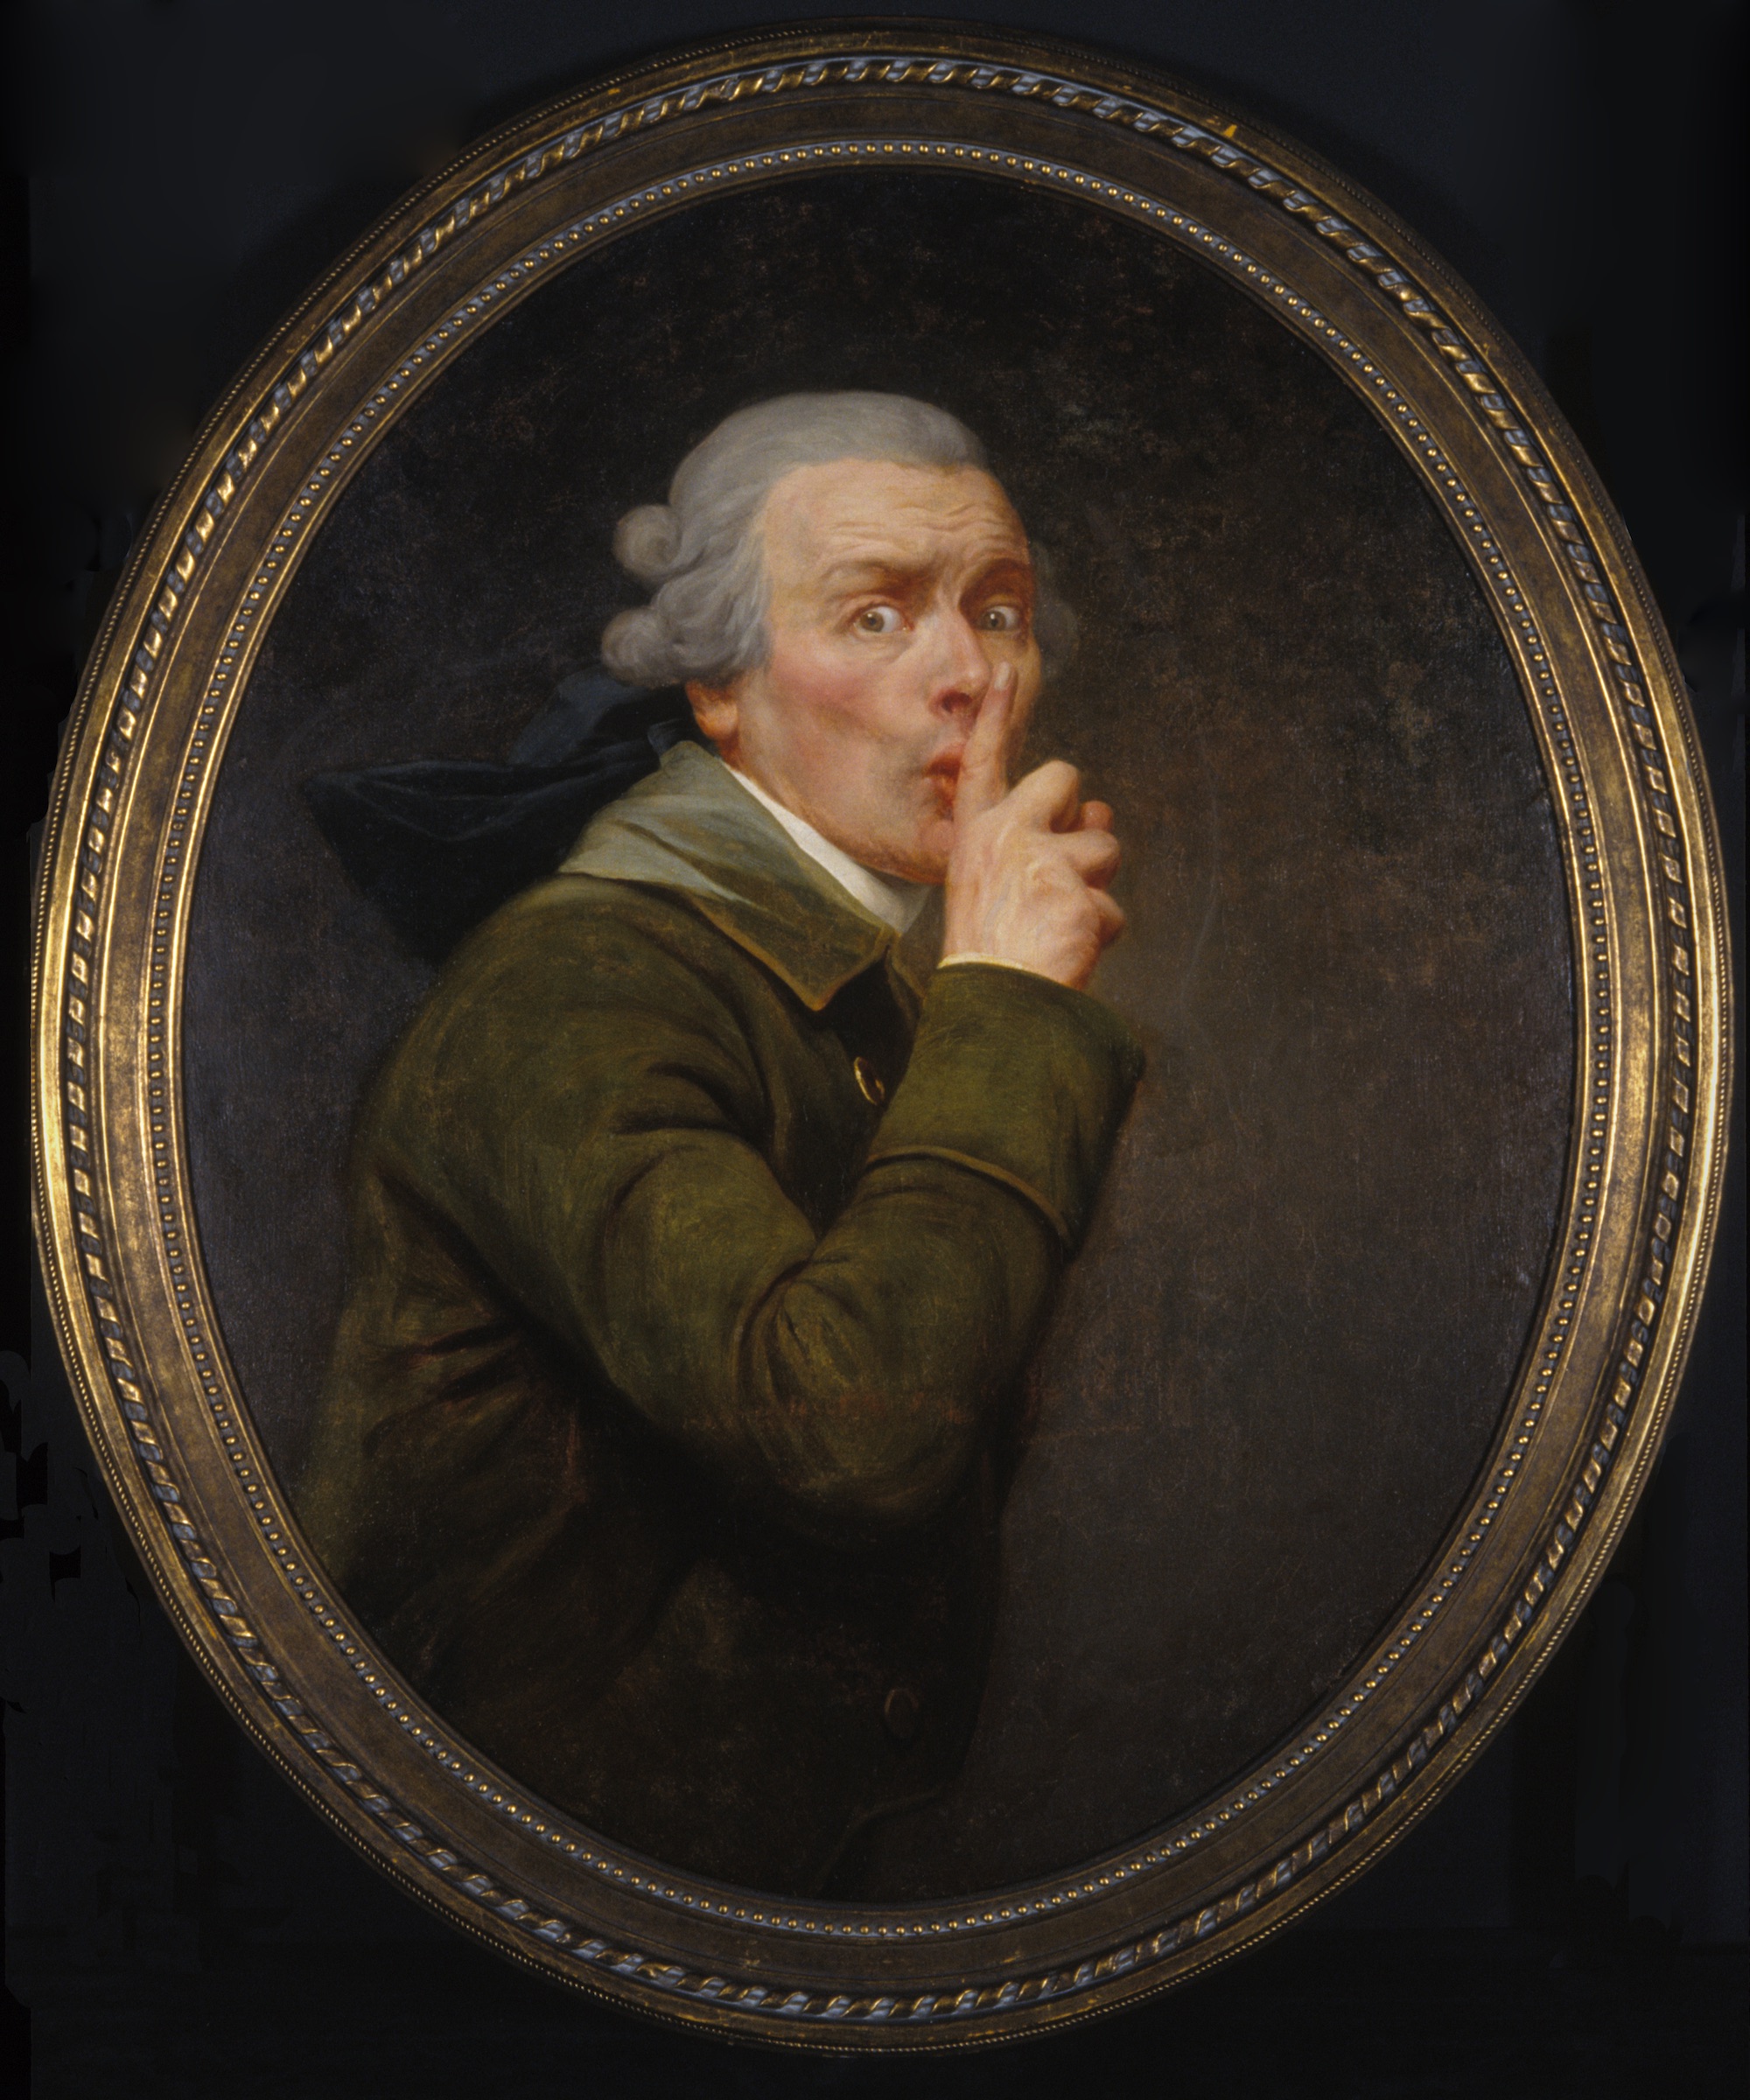 Le discret by Joseph Ducreux - circa 1791 - 91.6 x 79.9 cm 